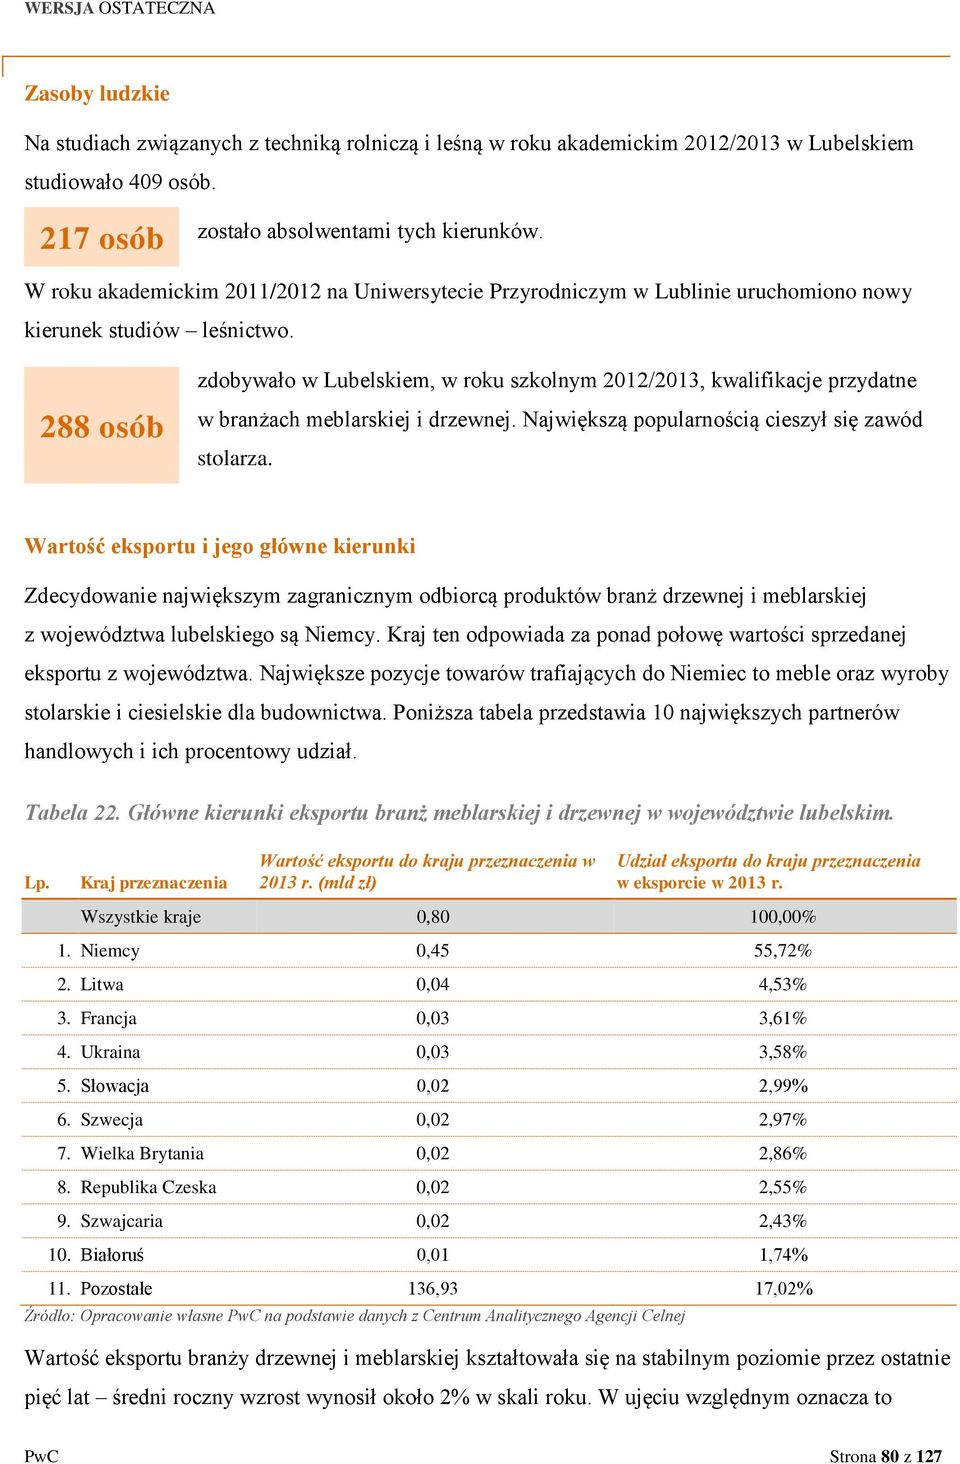 288 osób zdobywało w Lubelskiem, w roku szkolnym 2012/2013, kwalifikacje przydatne w branżach meblarskiej i drzewnej. Największą popularnością cieszył się zawód stolarza.